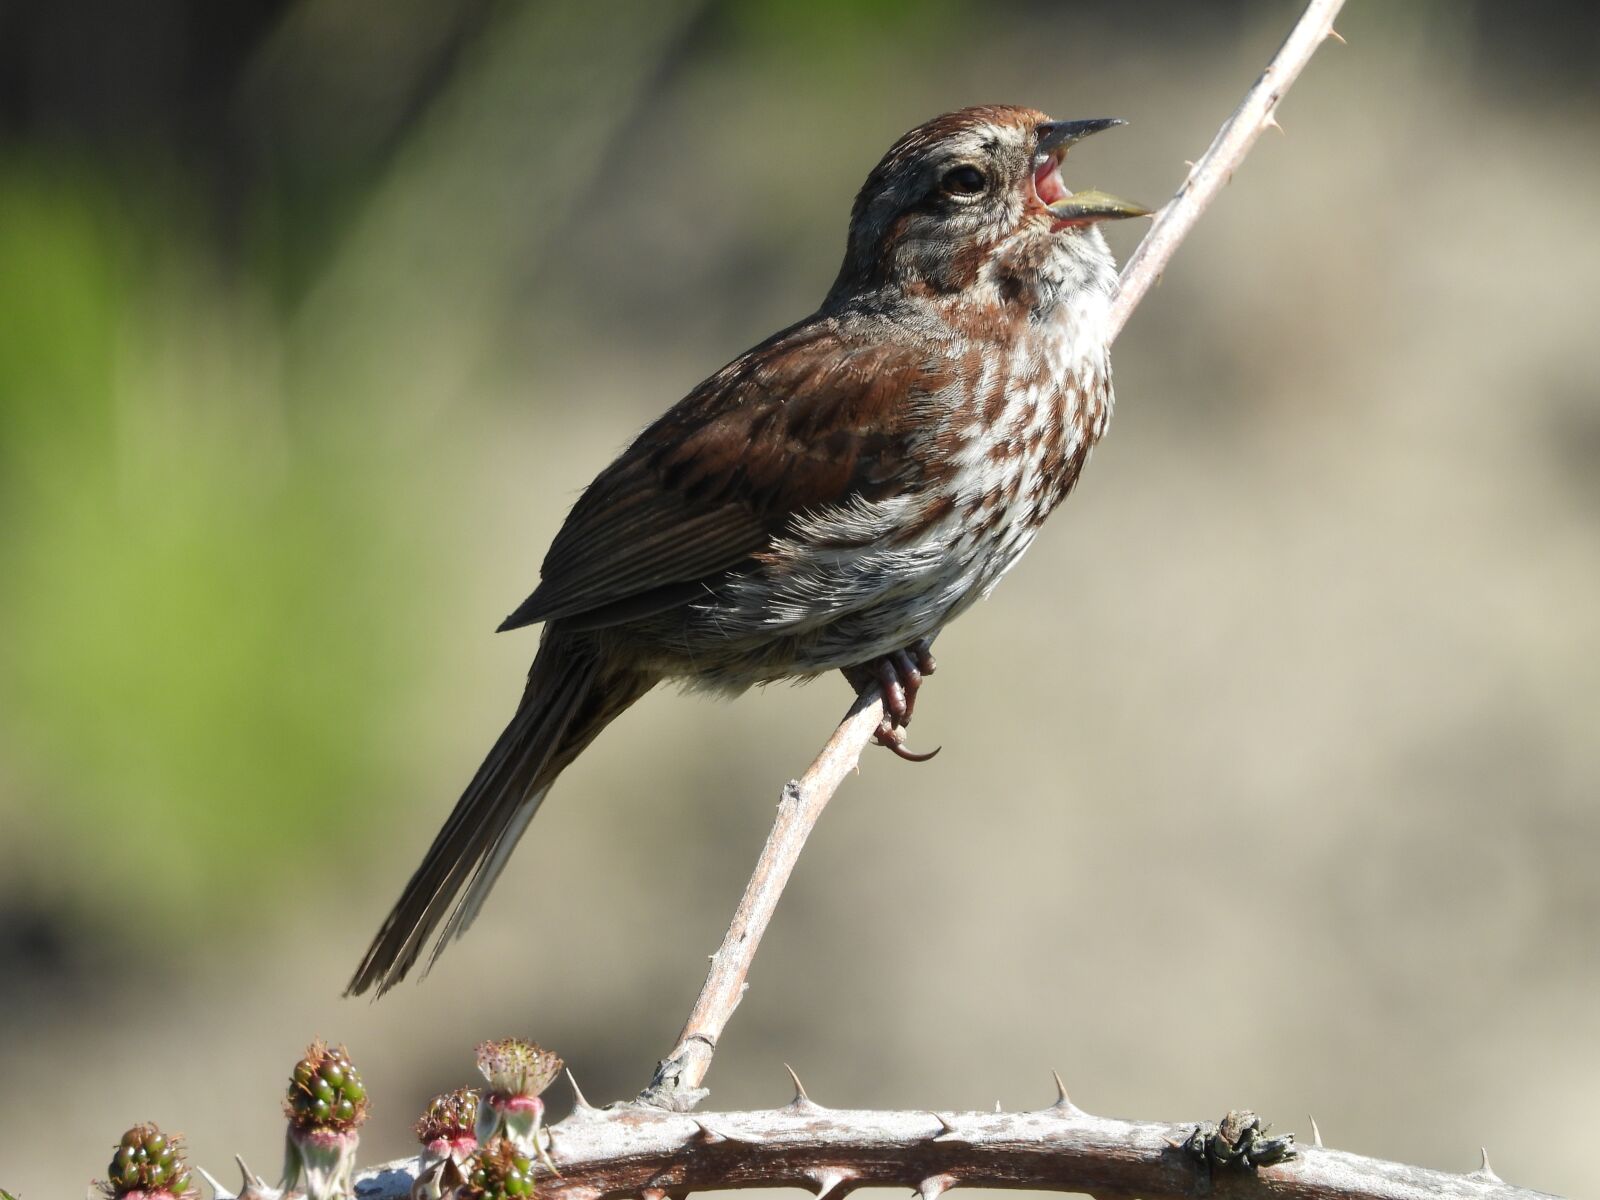 Nikon Coolpix P1000 sample photo. Song sparrow, bird, nature photography